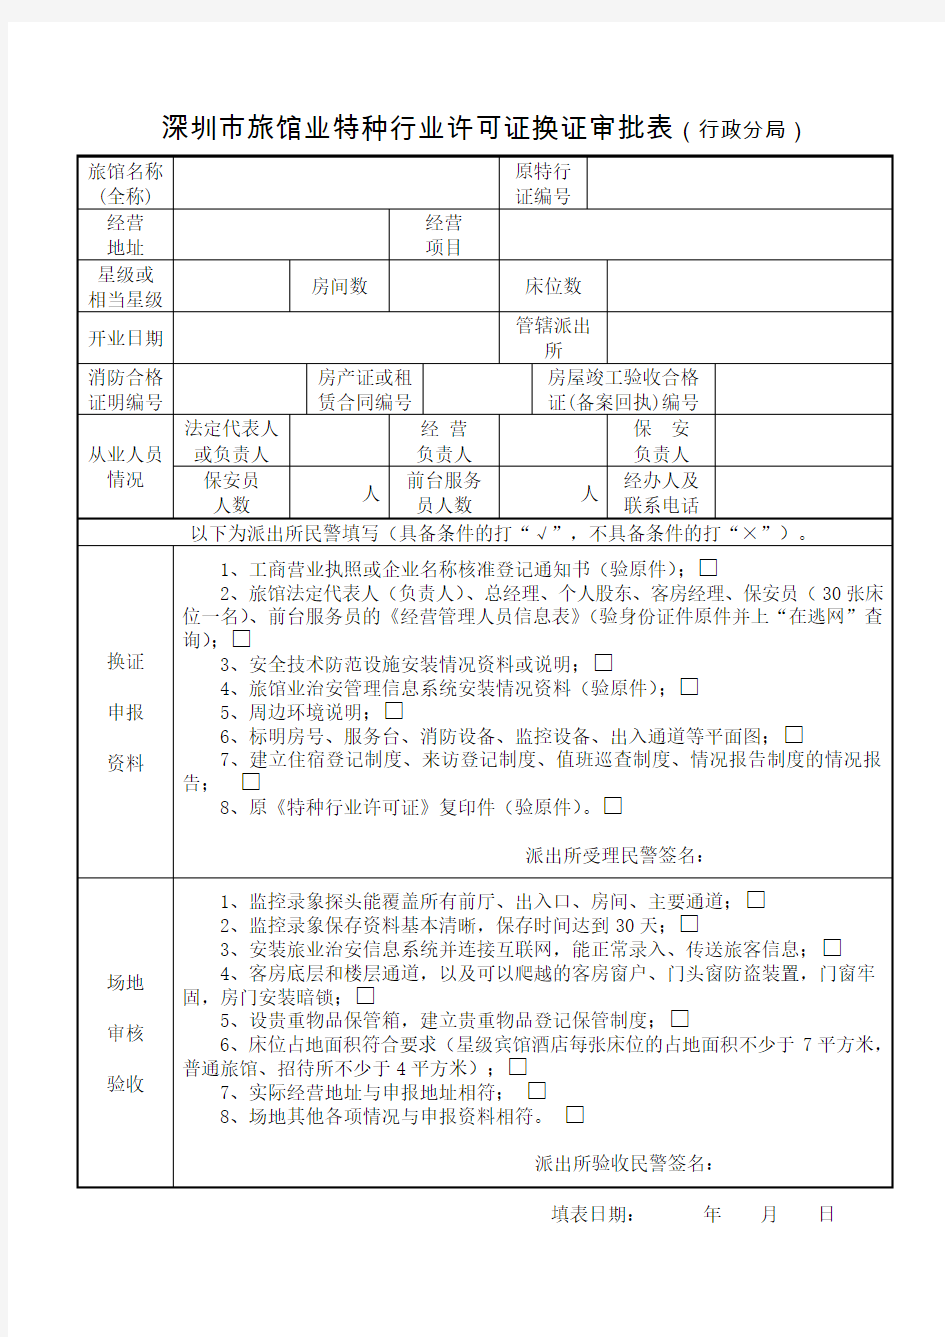 深圳市旅馆业特种行业许可证换证审批表(行政分局)